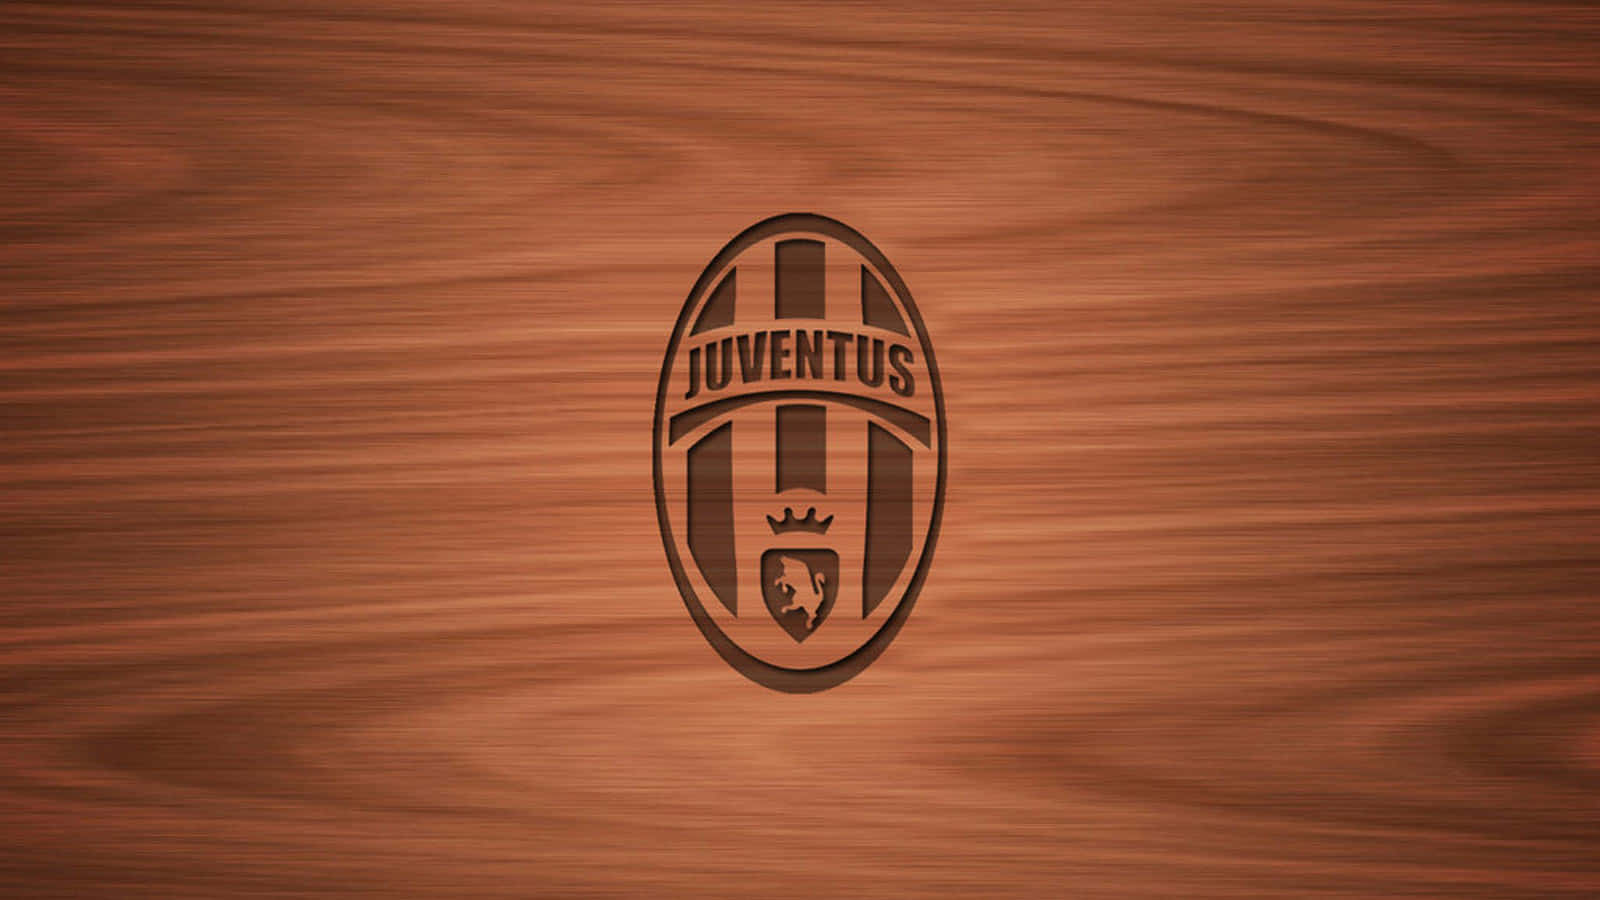 Lajuventus Football Club Domina La Serie A Italiana.